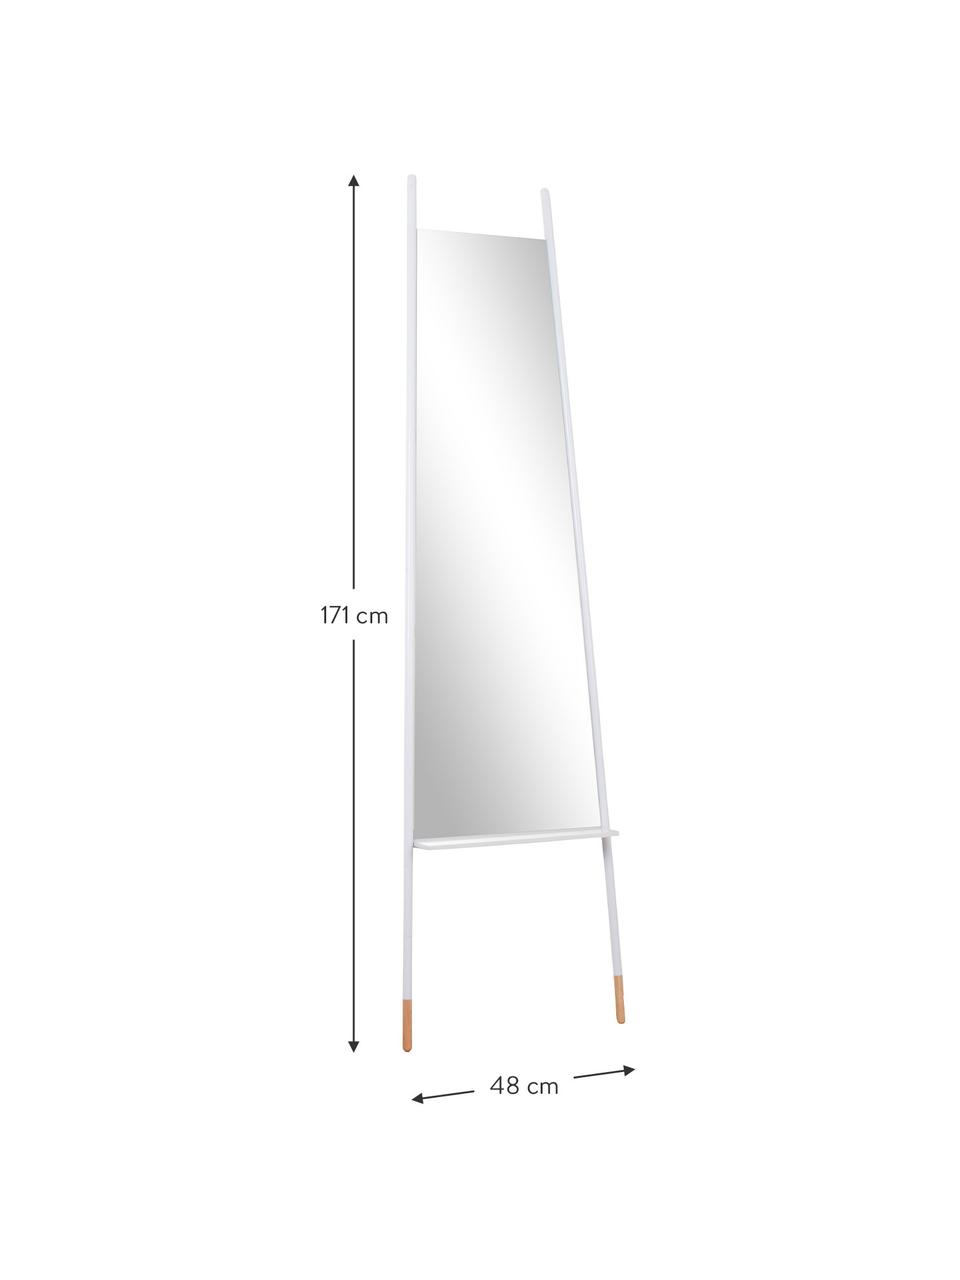 Rechthoekige leunende spiegel Dresser met opbergruimte, Lijst: metaal, Poten: hout, Wit, spiegelglas, 48 x 171 cm